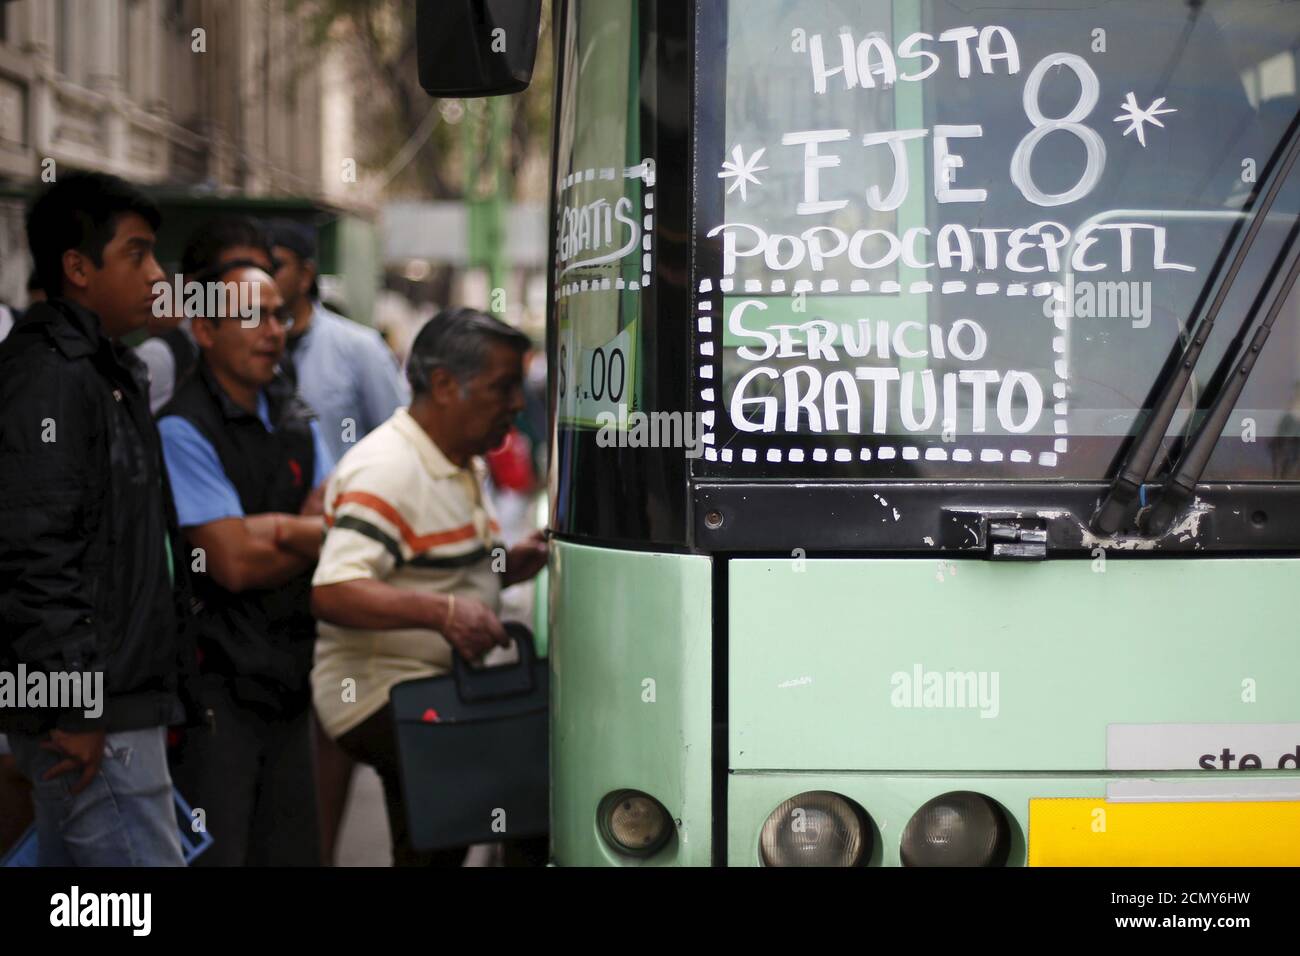 Los pasajeros se embarcará en un autobús eléctrico durante un día libre de transporte público en la Ciudad de México, 16 de marzo de 2016. El gobierno de la Ciudad de México ordenó restricciones de tráfico y recomendó a la gente permanecer en el interior debido a la grave contaminación del aire, emitiendo su segunda alerta más alta para los niveles de ozono por primera vez en 13 años. La señal dice, 'hasta el eje 8, Popocatepetl. Servicio gratuito". REUTERS/Edgard Garrido Foto de stock